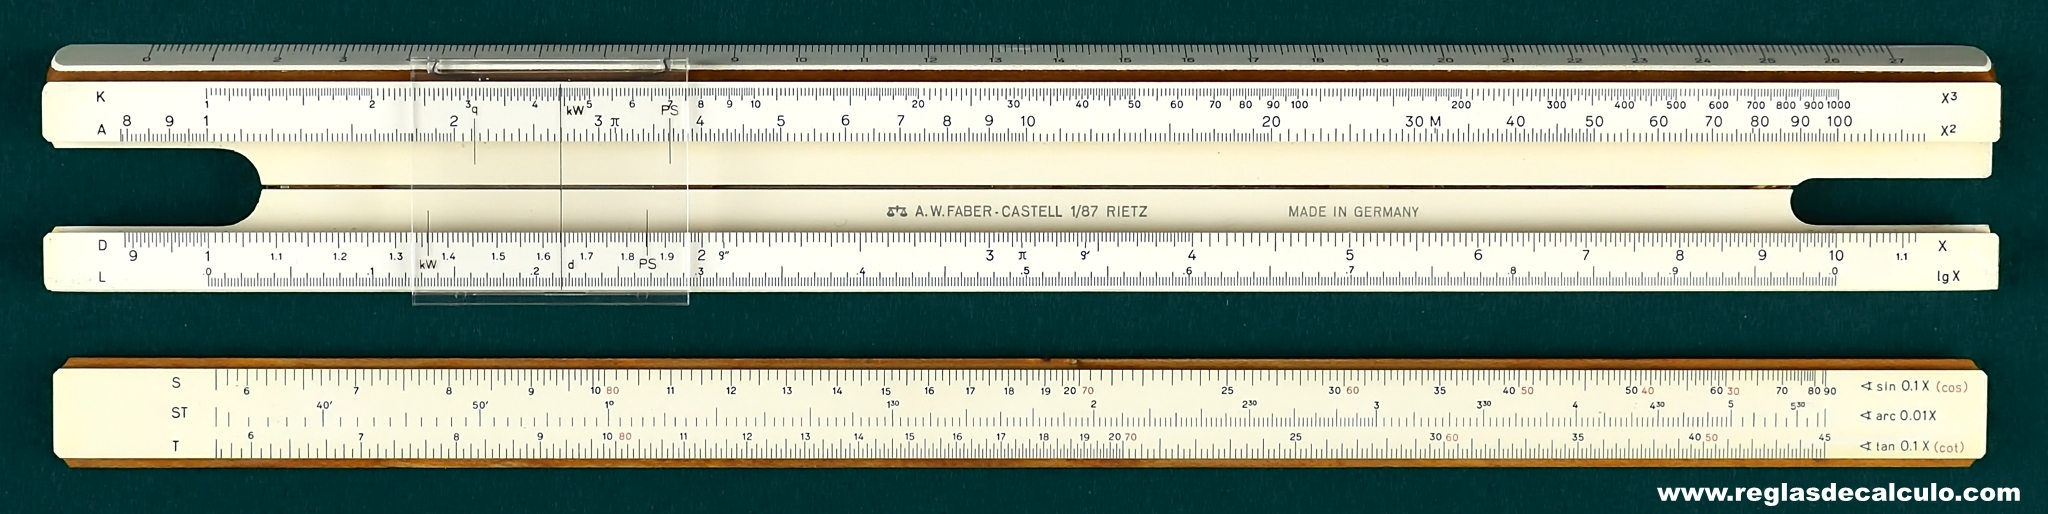 Faber Castell 1/87 Rietz